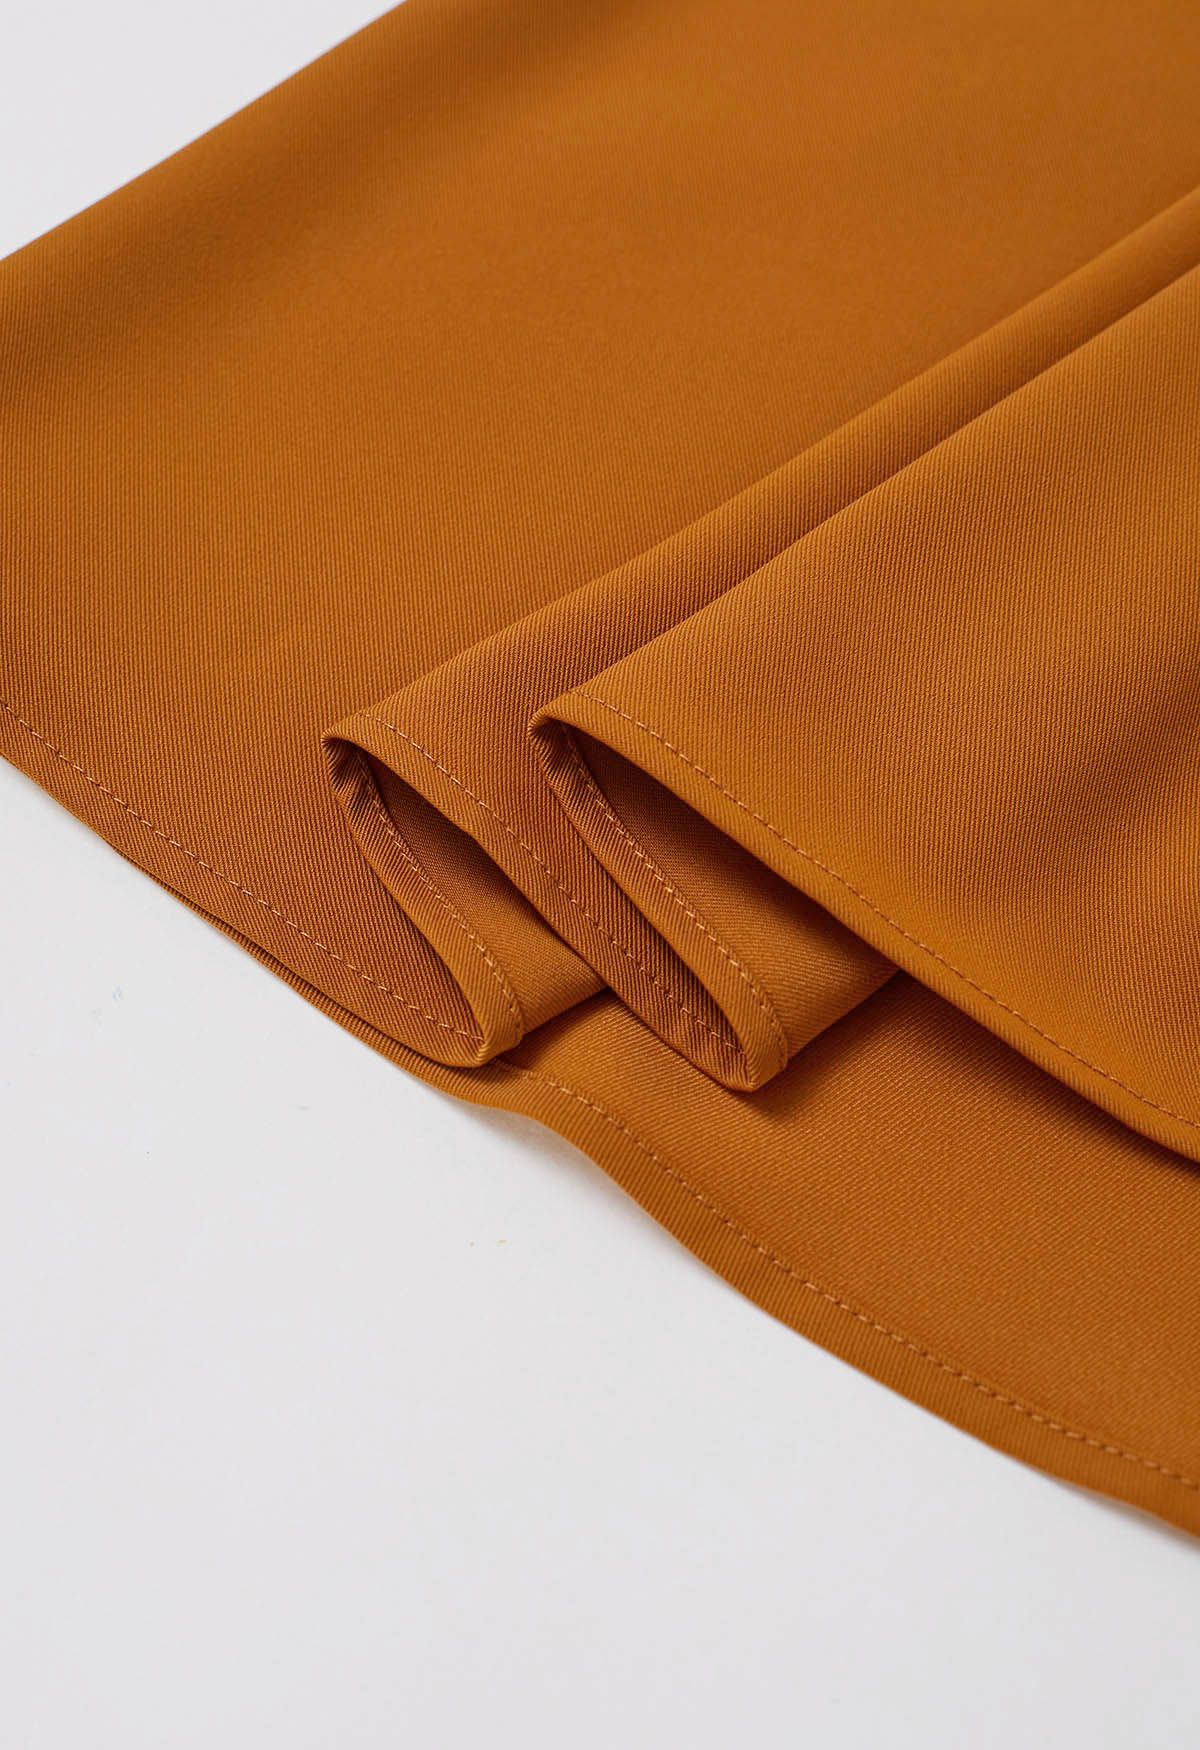 Falda midi con cinturón plisado en naranja Refined